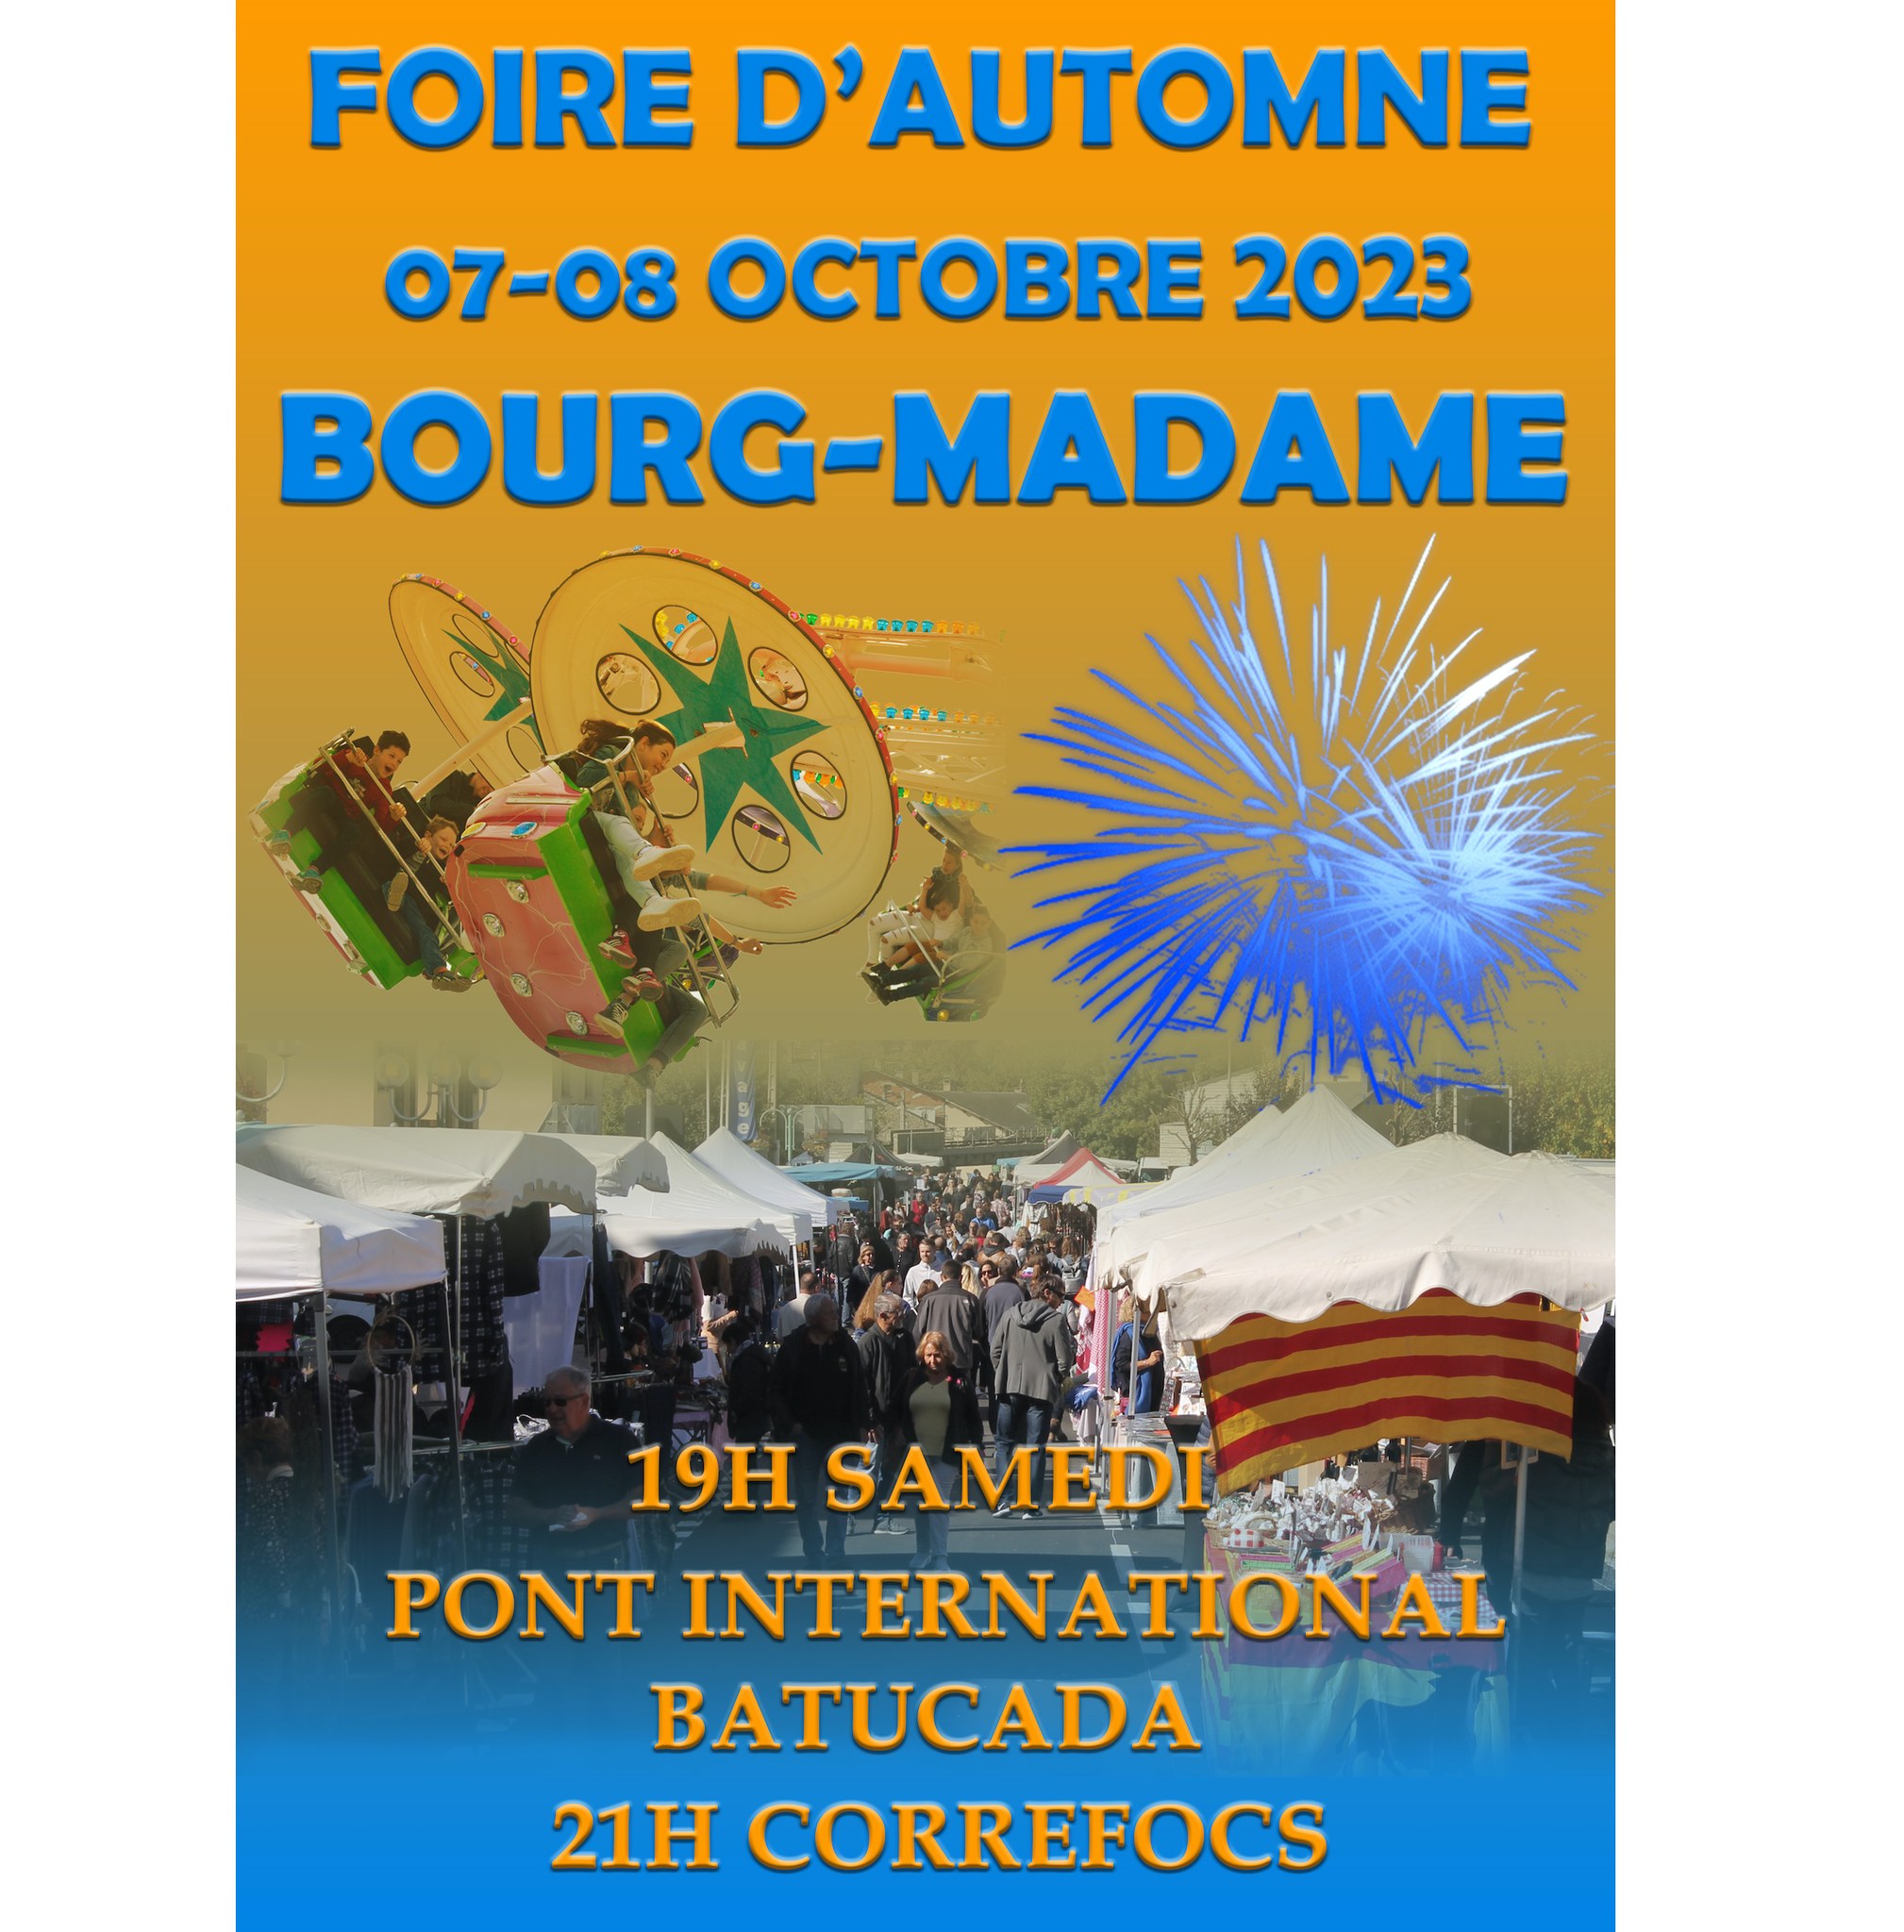 FOIRE D’AUTOMNE BOURG-MADAME